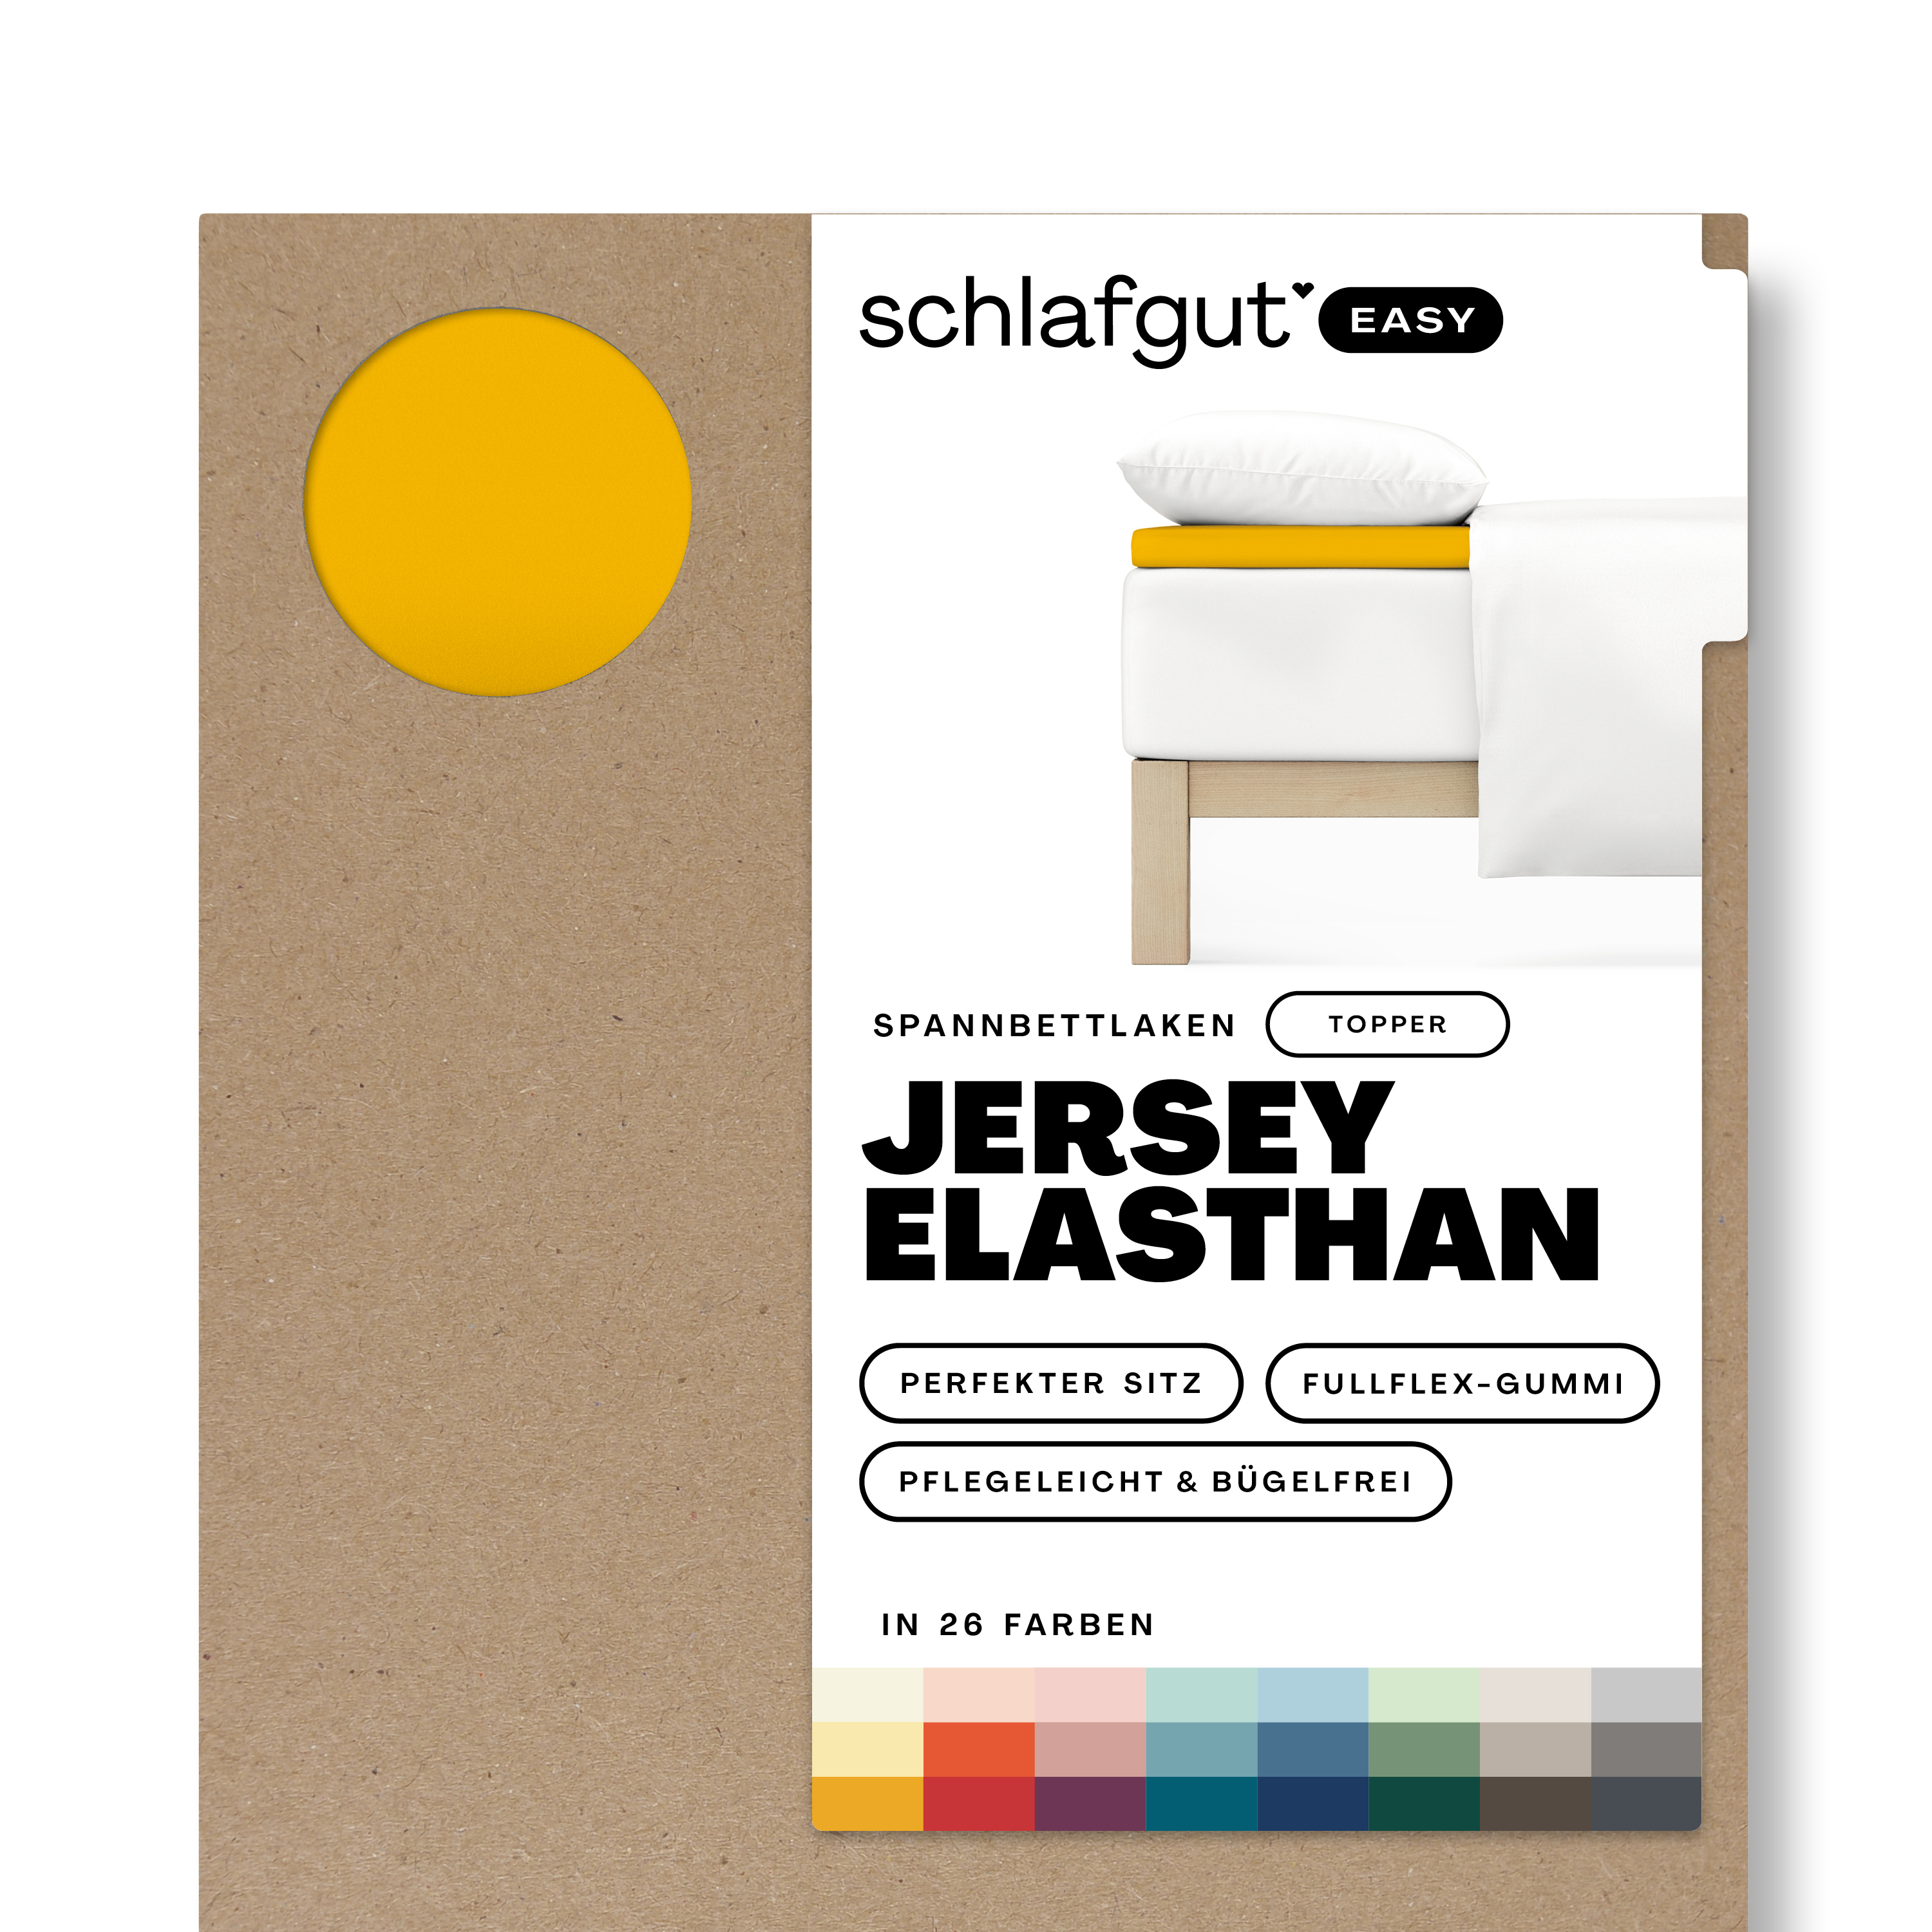 Das Produktbild vom Spannbettlaken der Reihe Easy Elasthan Topper in Farbe yellow deep von Schlafgut